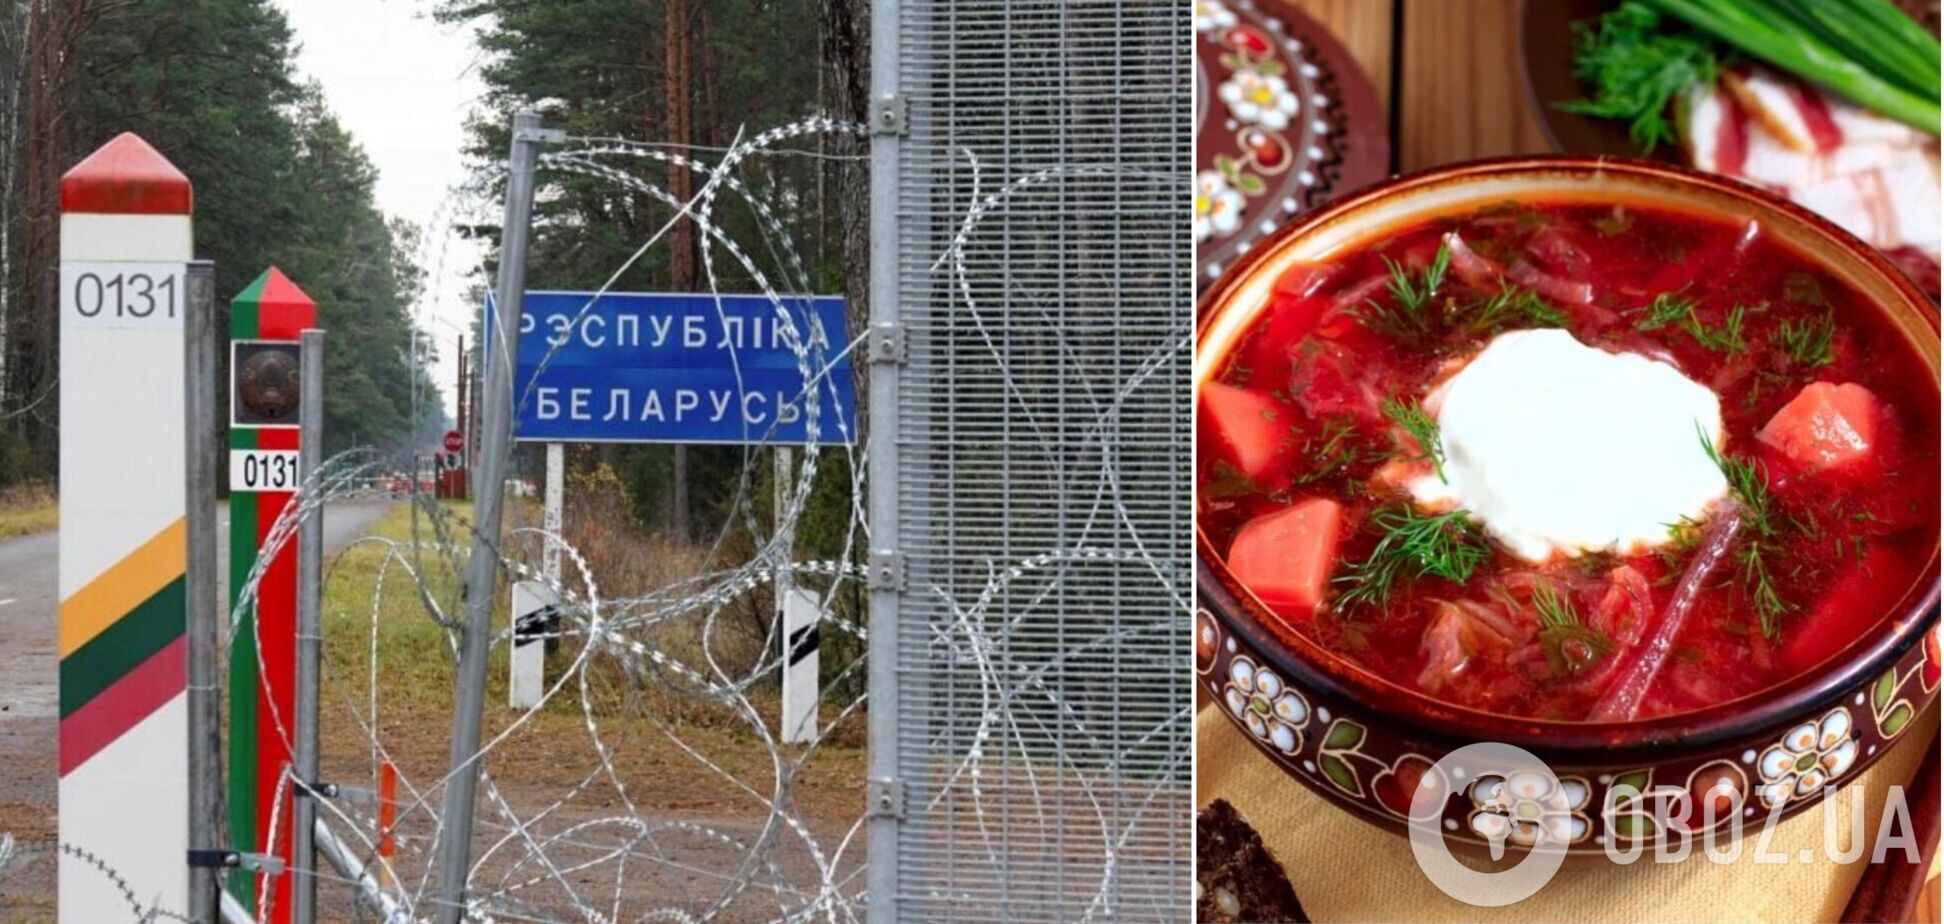 'Переходьте на наш бік':   білоруси влаштували цинічну акцію на кордоні з Україною із розповіддю про 'братський борщ'. Відео